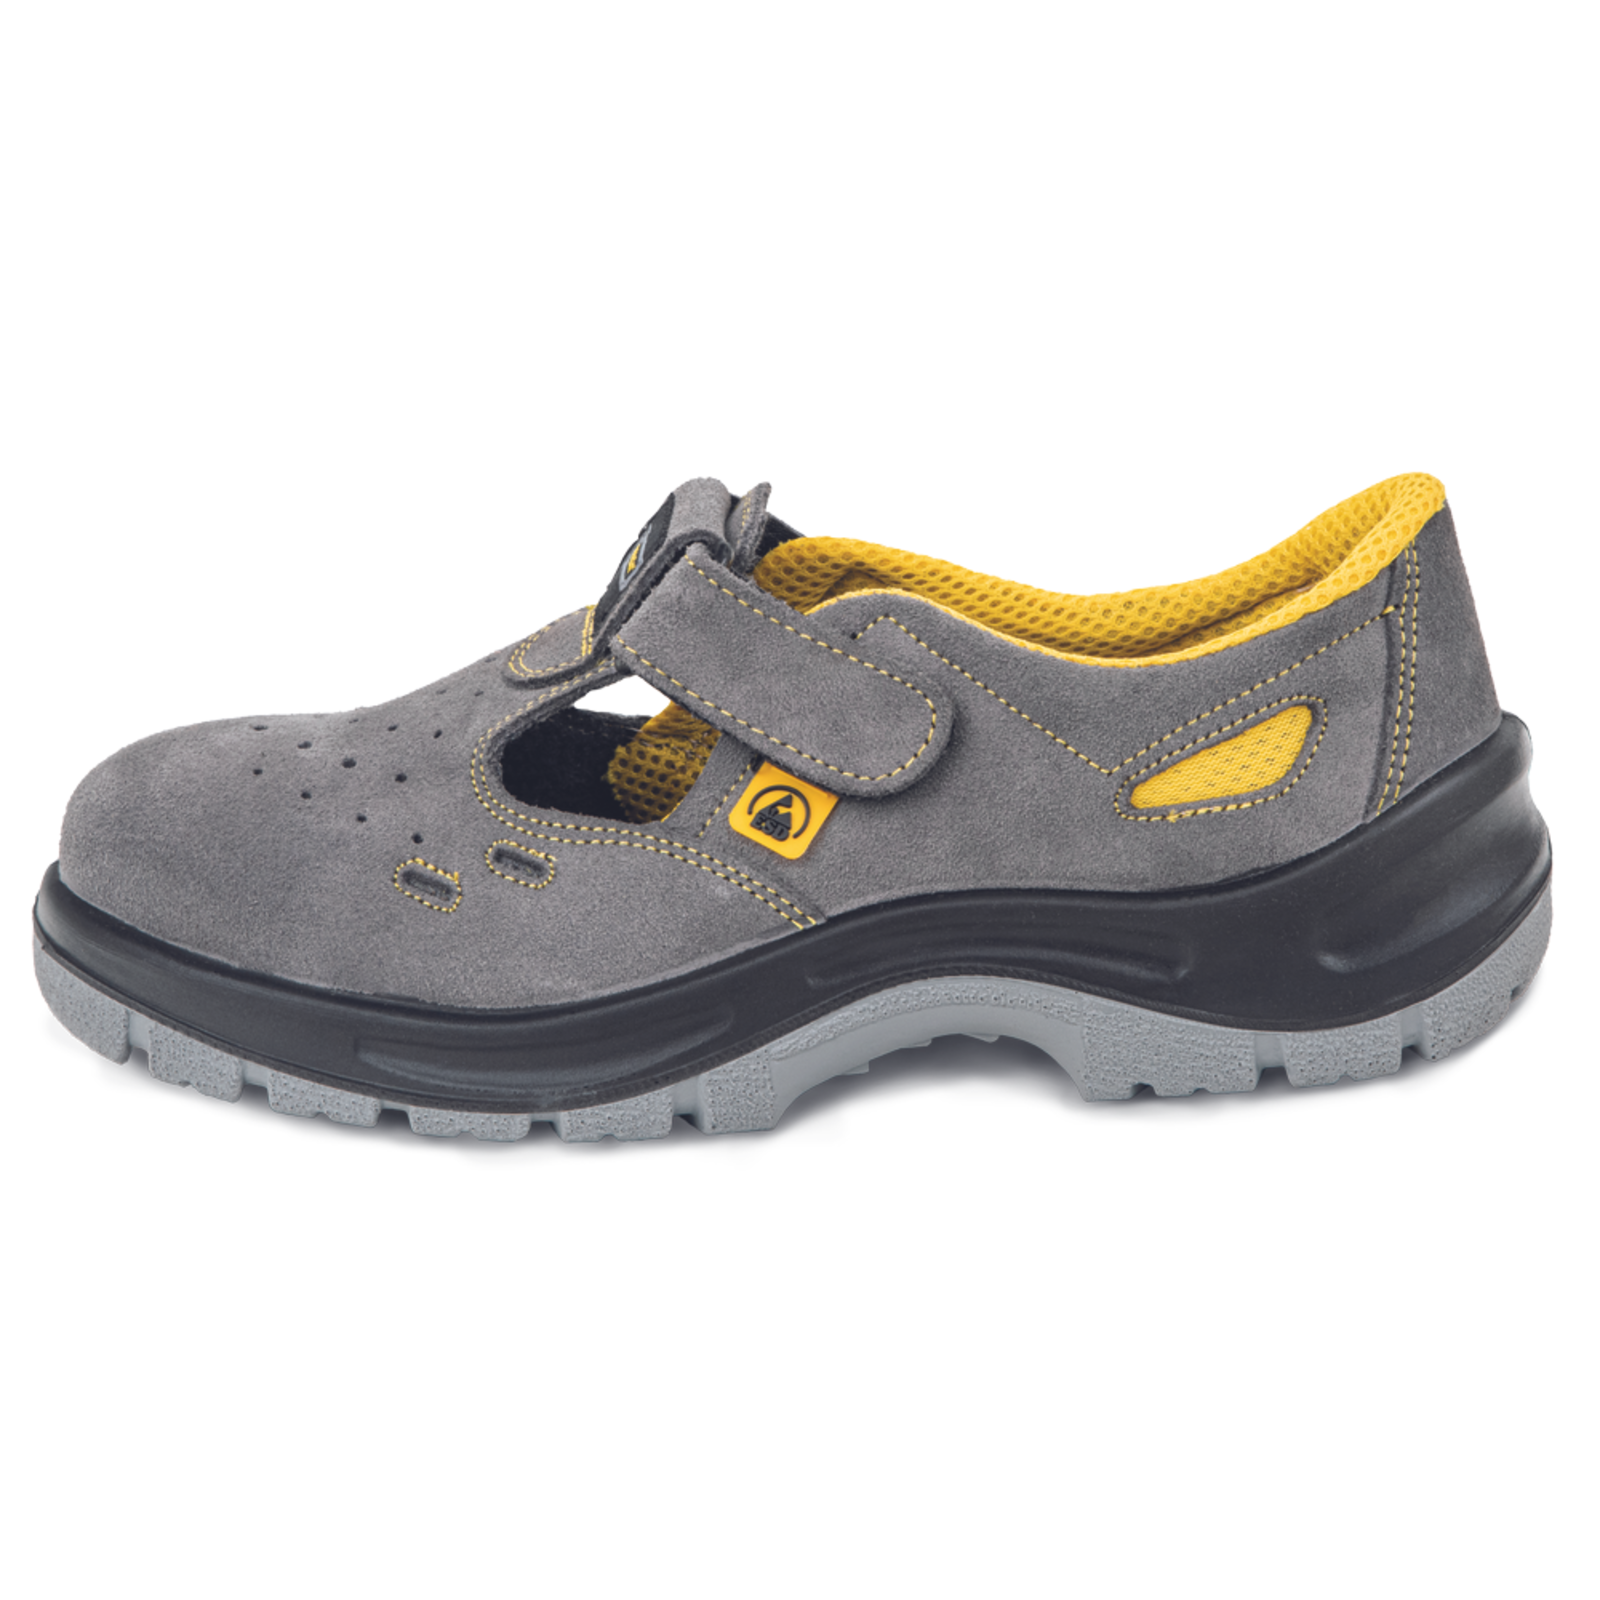 Pracovné bezpečnostné sandále Panda Selma MF ESD S1P SRC - veľkosť: 43, farba: sivá/žltá